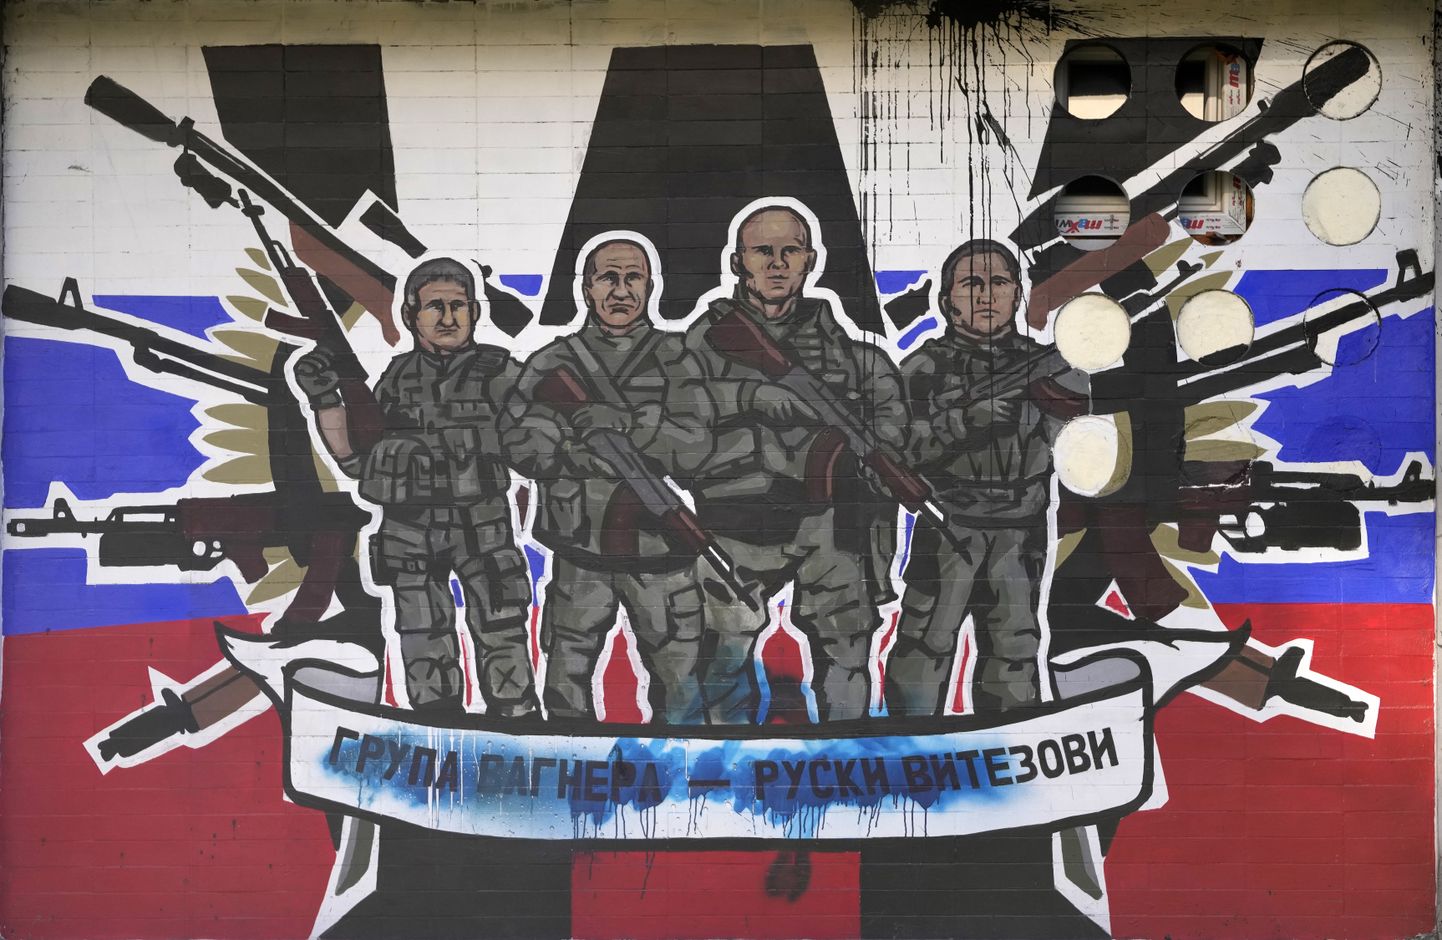 Graffiti Wagneri palgasõduritest, millel on kirjas «Wagneri grupp - Vene rüütlid», Serbias Belgradis 13. jaanuaril 2023. aastal.